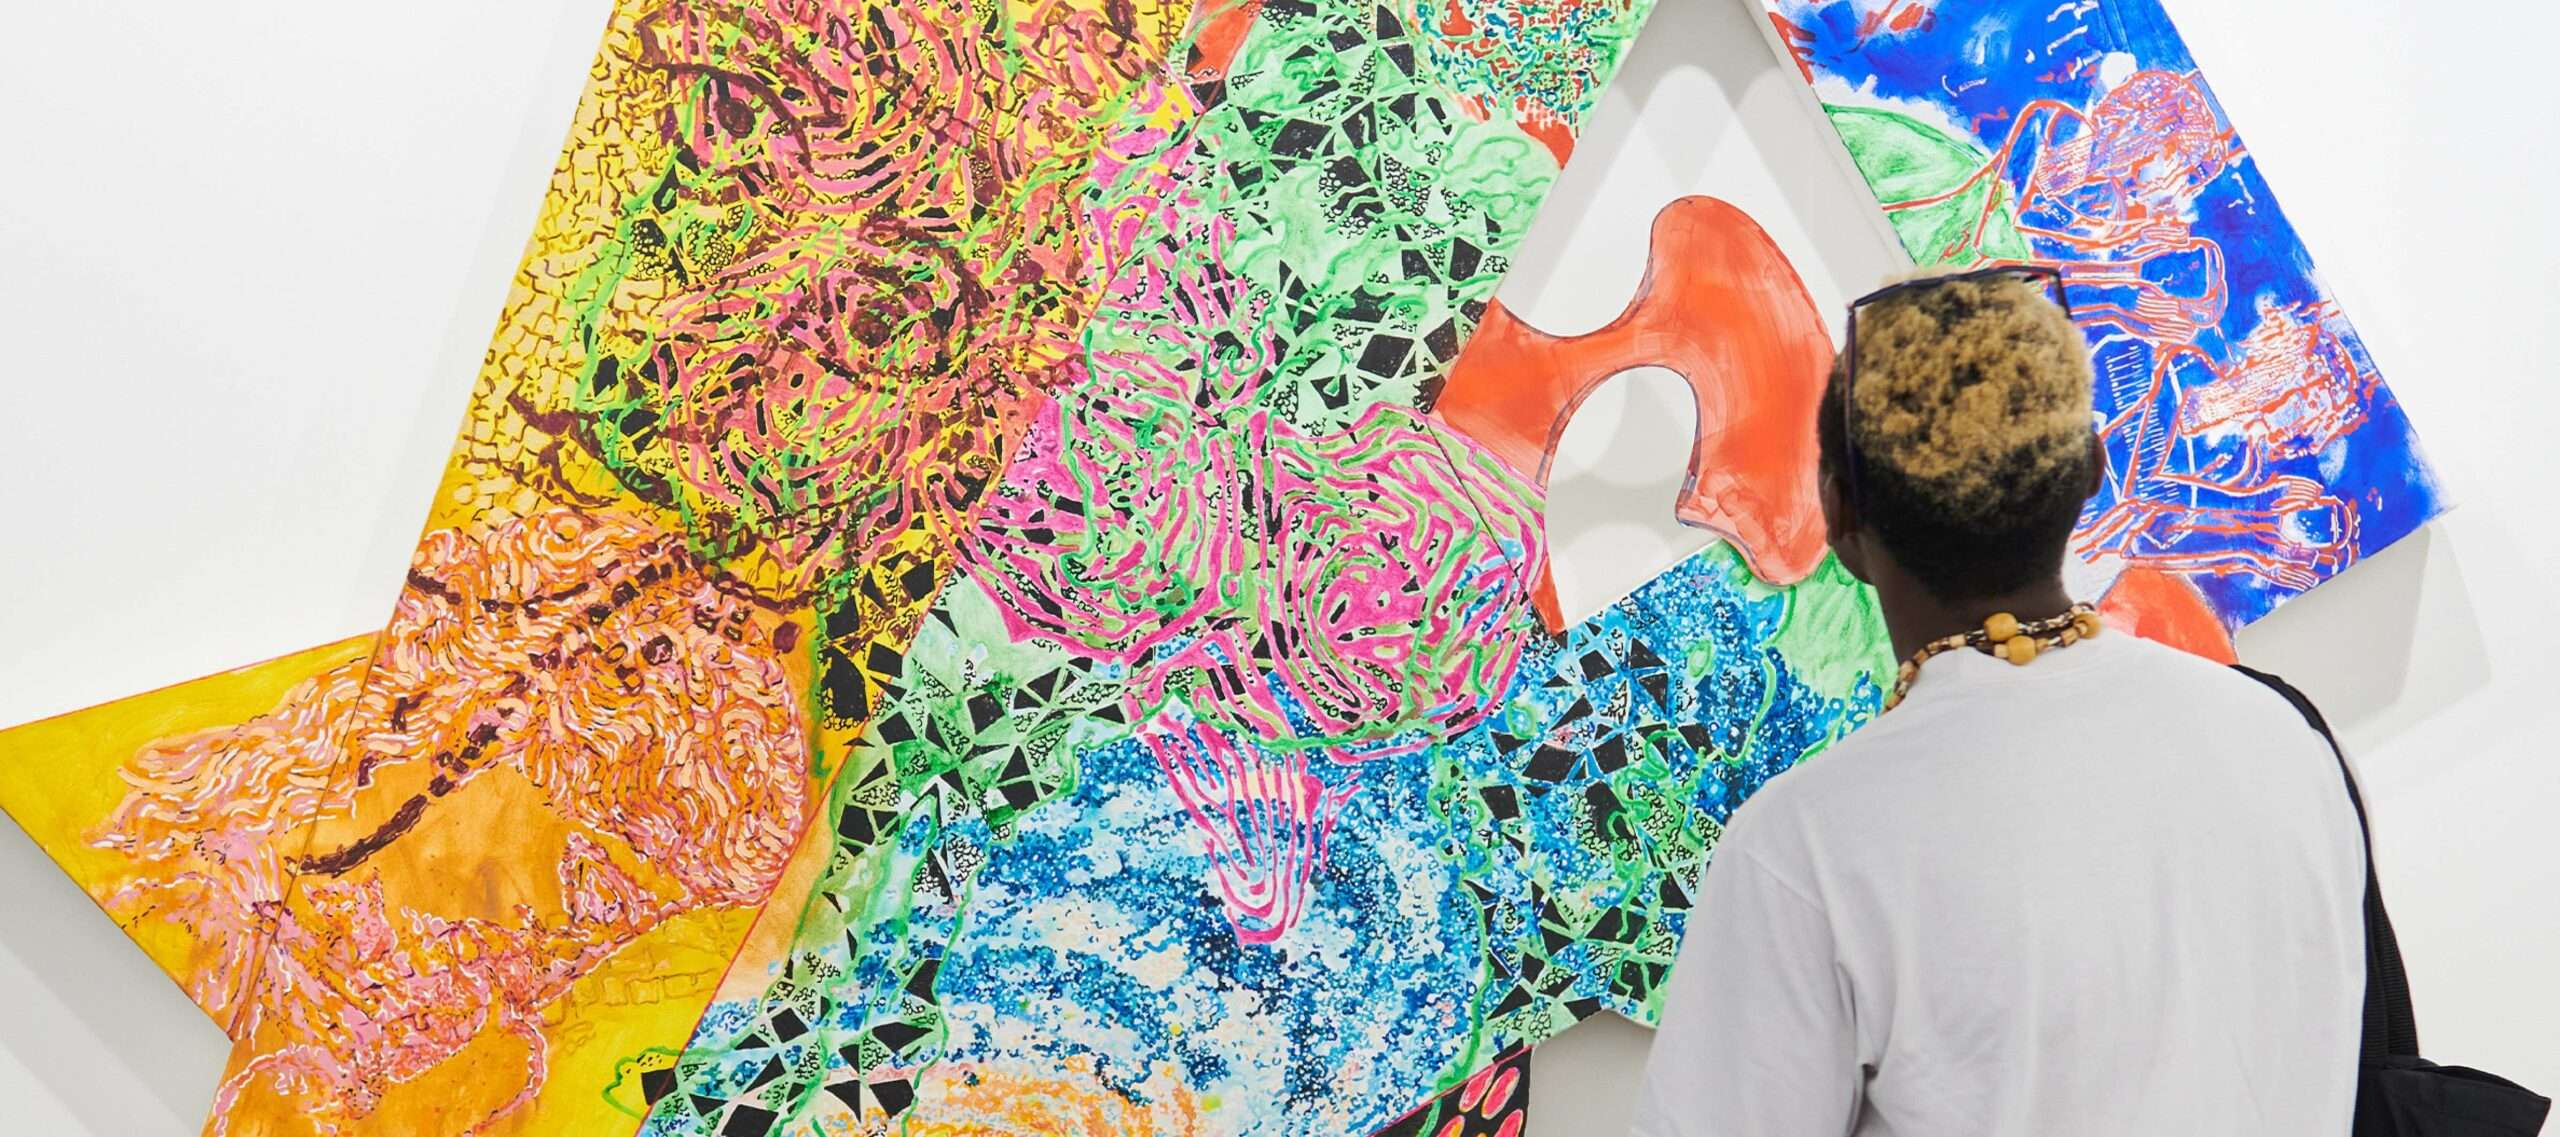 A man looks at an abstract colourful artwork at Art Basel.